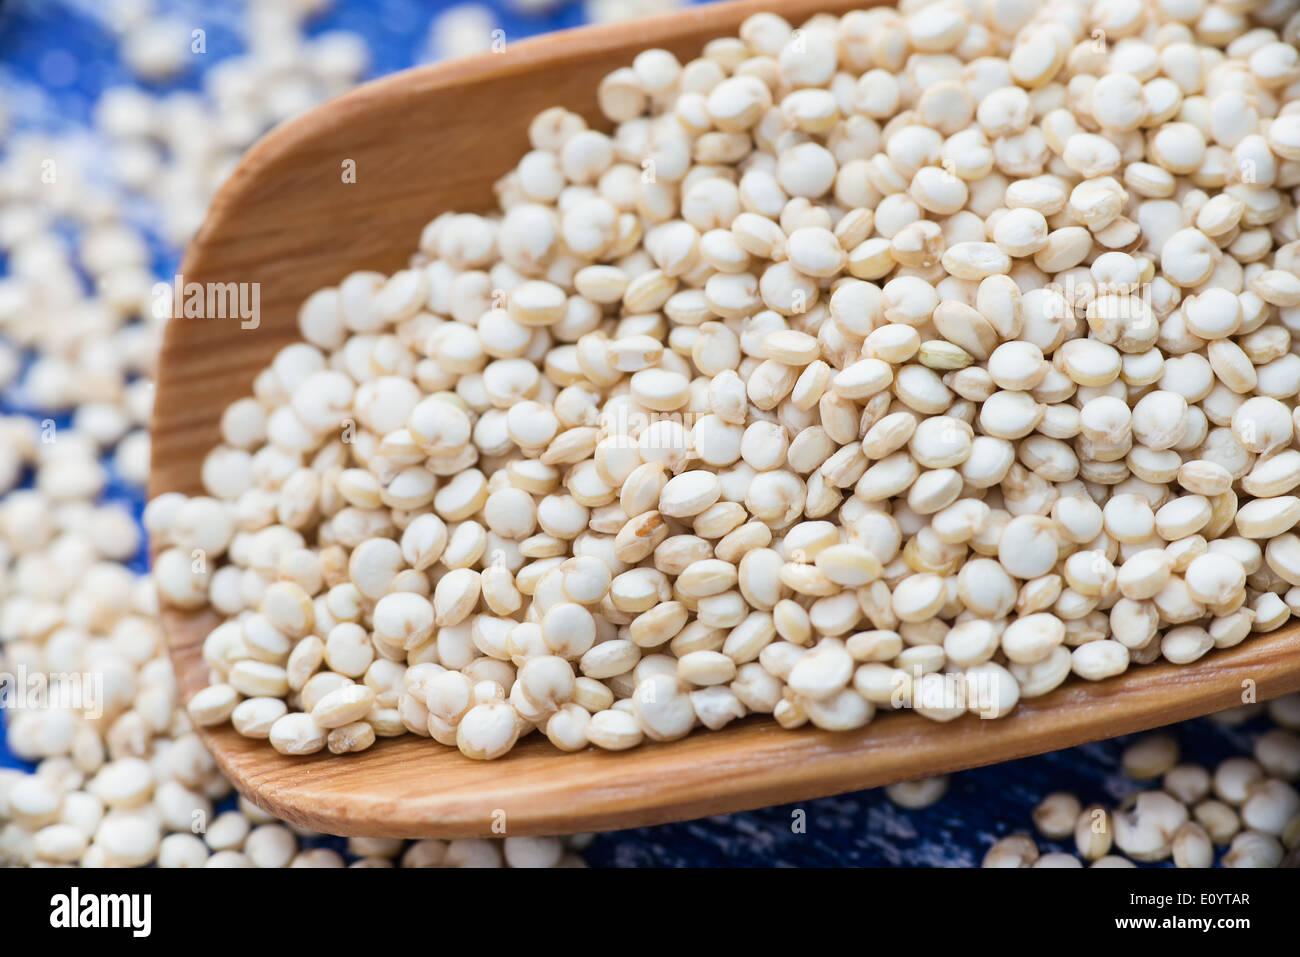 Roh weiß Quinoa in Löffel, Tiefenschärfe, Nahaufnahme Stockfotografie -  Alamy